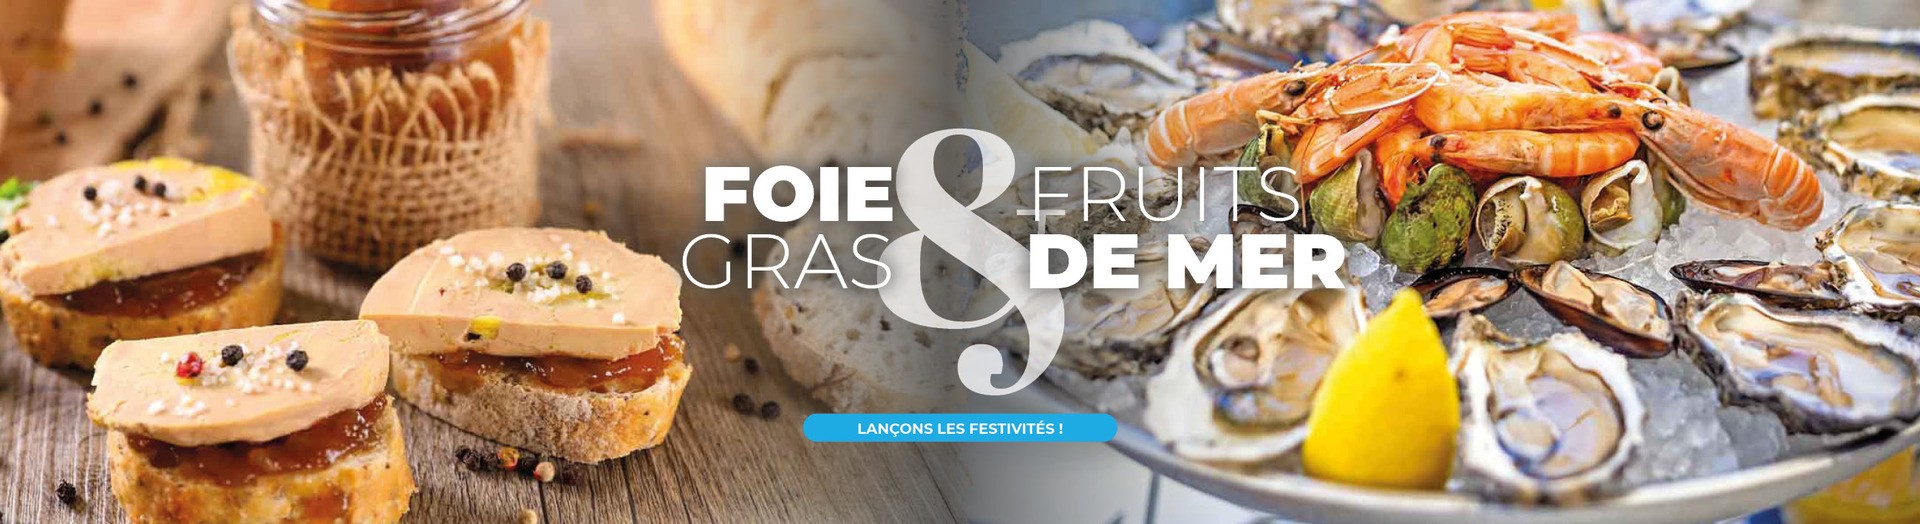 Foie gras et plateaux de fruits de mer : découvrez notre mini-boutique pour des repas de fin d'année réussis !